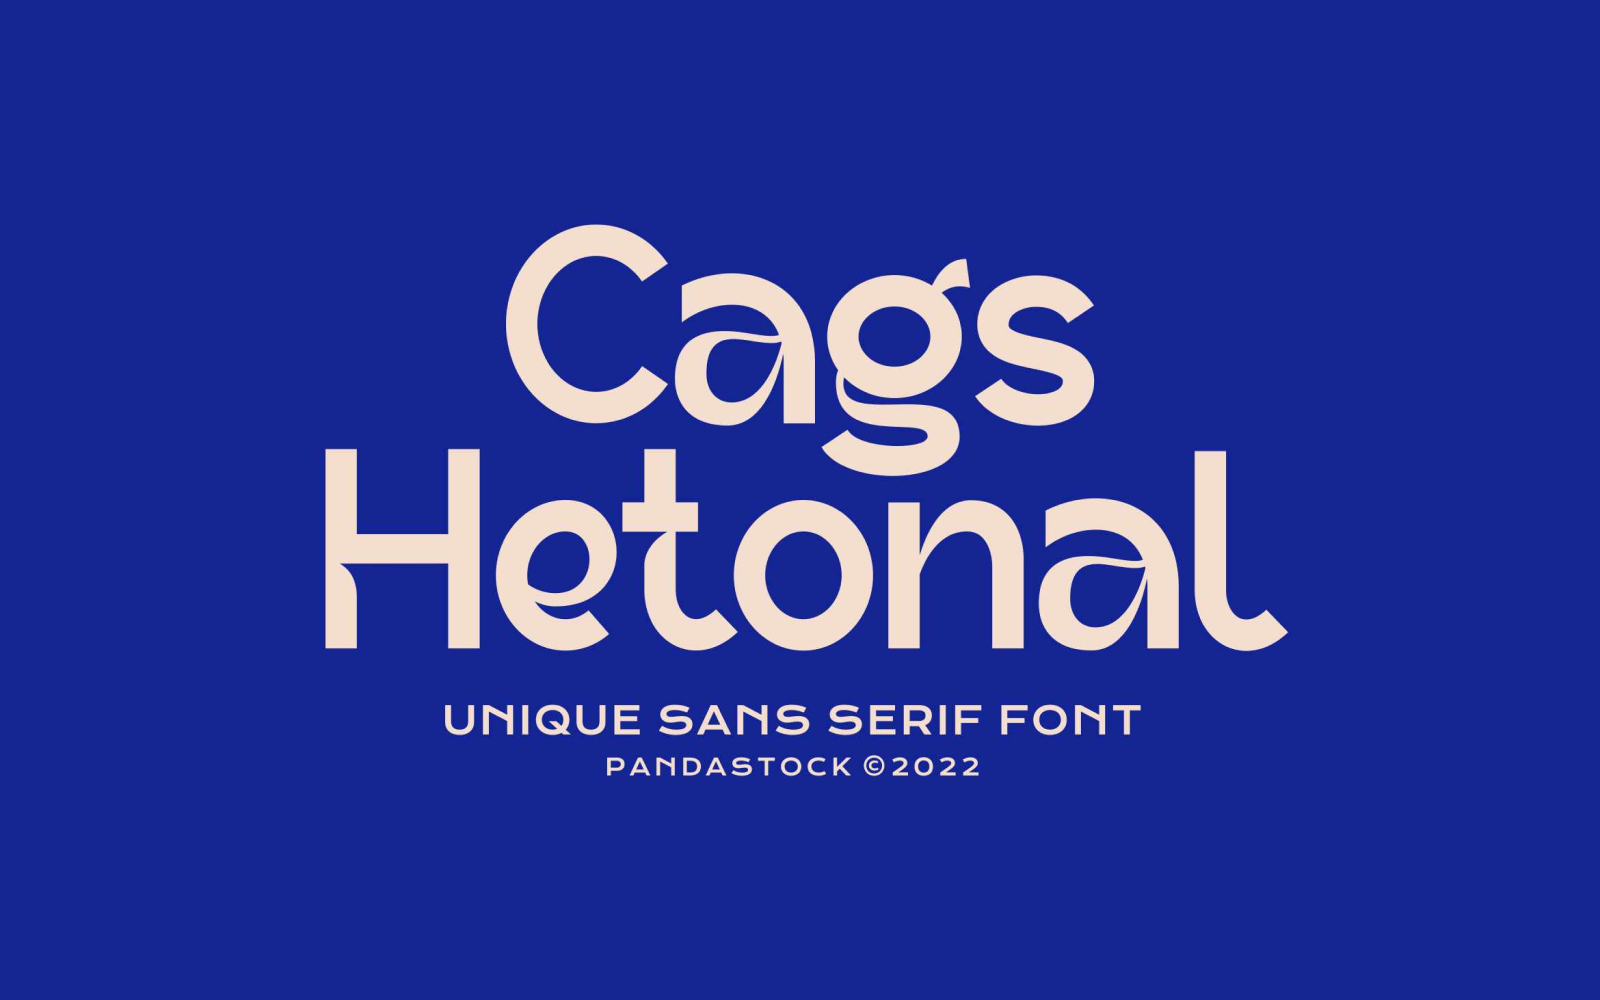 Cags Hetonal Fancy Font Style